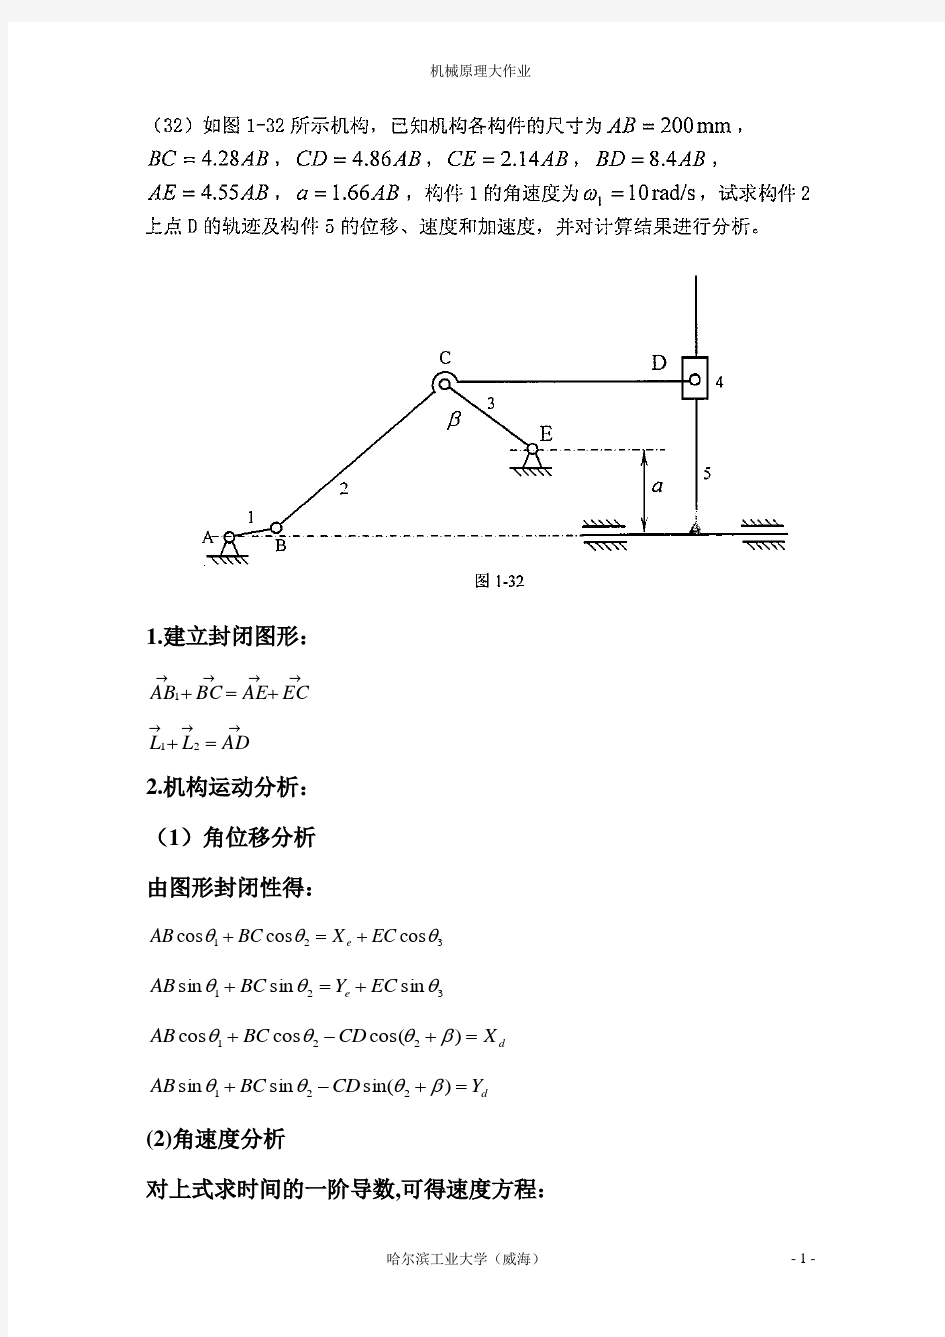 机械原理大作业-连杆设计(32题)